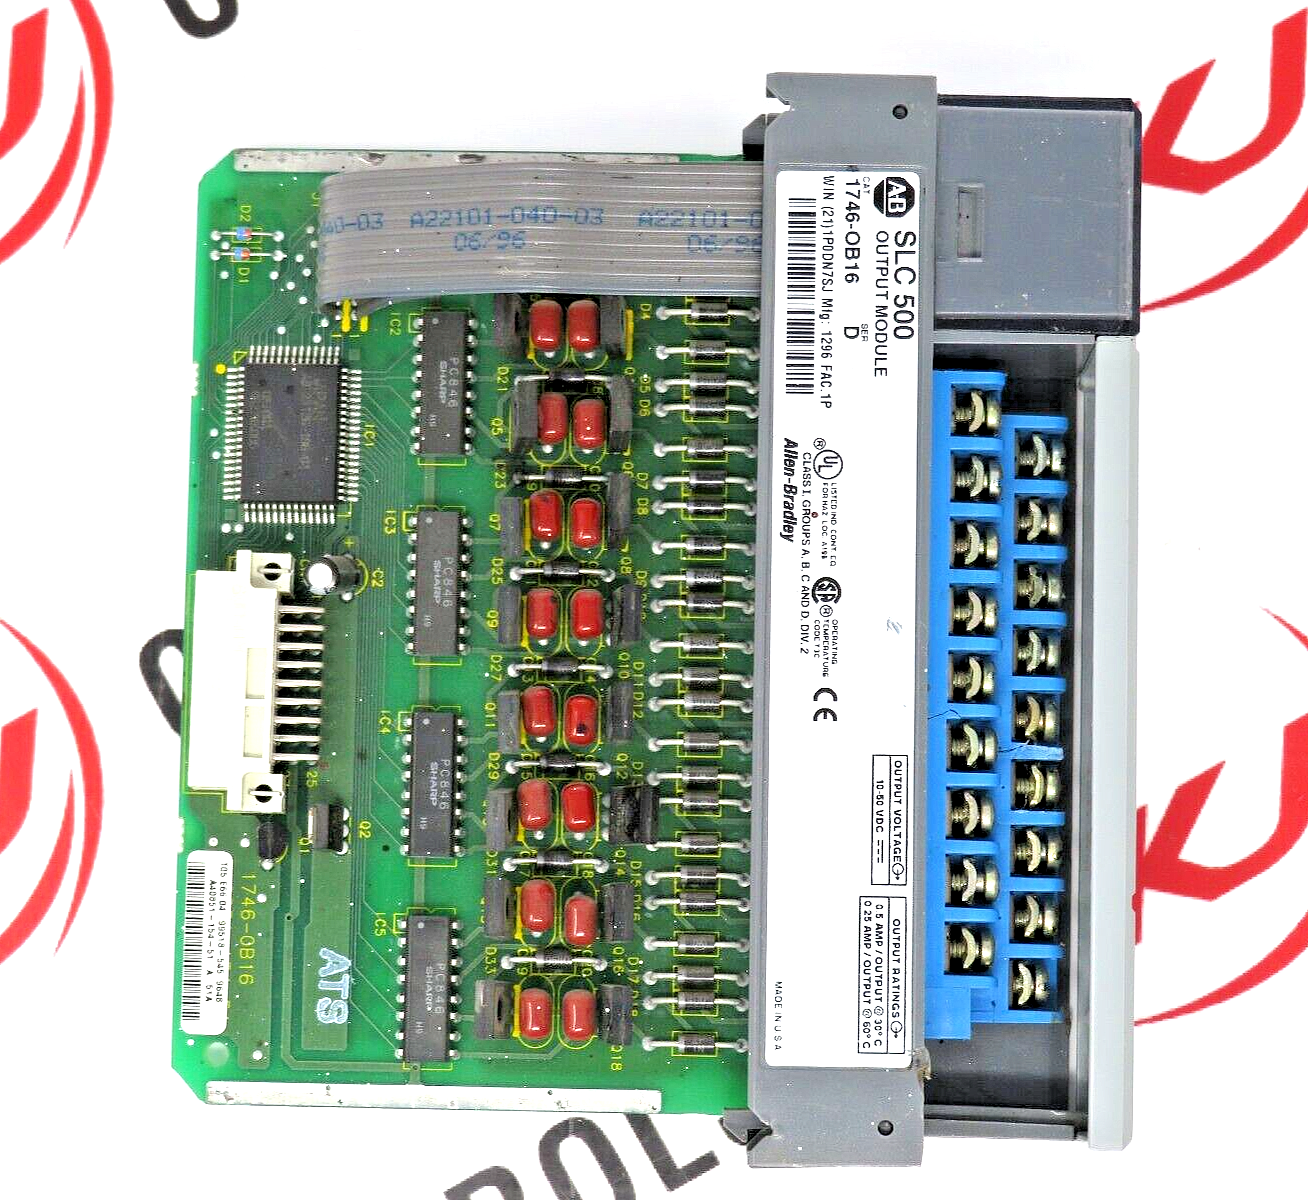 Allen-Bradley 1746-OB16 SLC 500 Discrete 16-24VDC Output Channel Module Series D